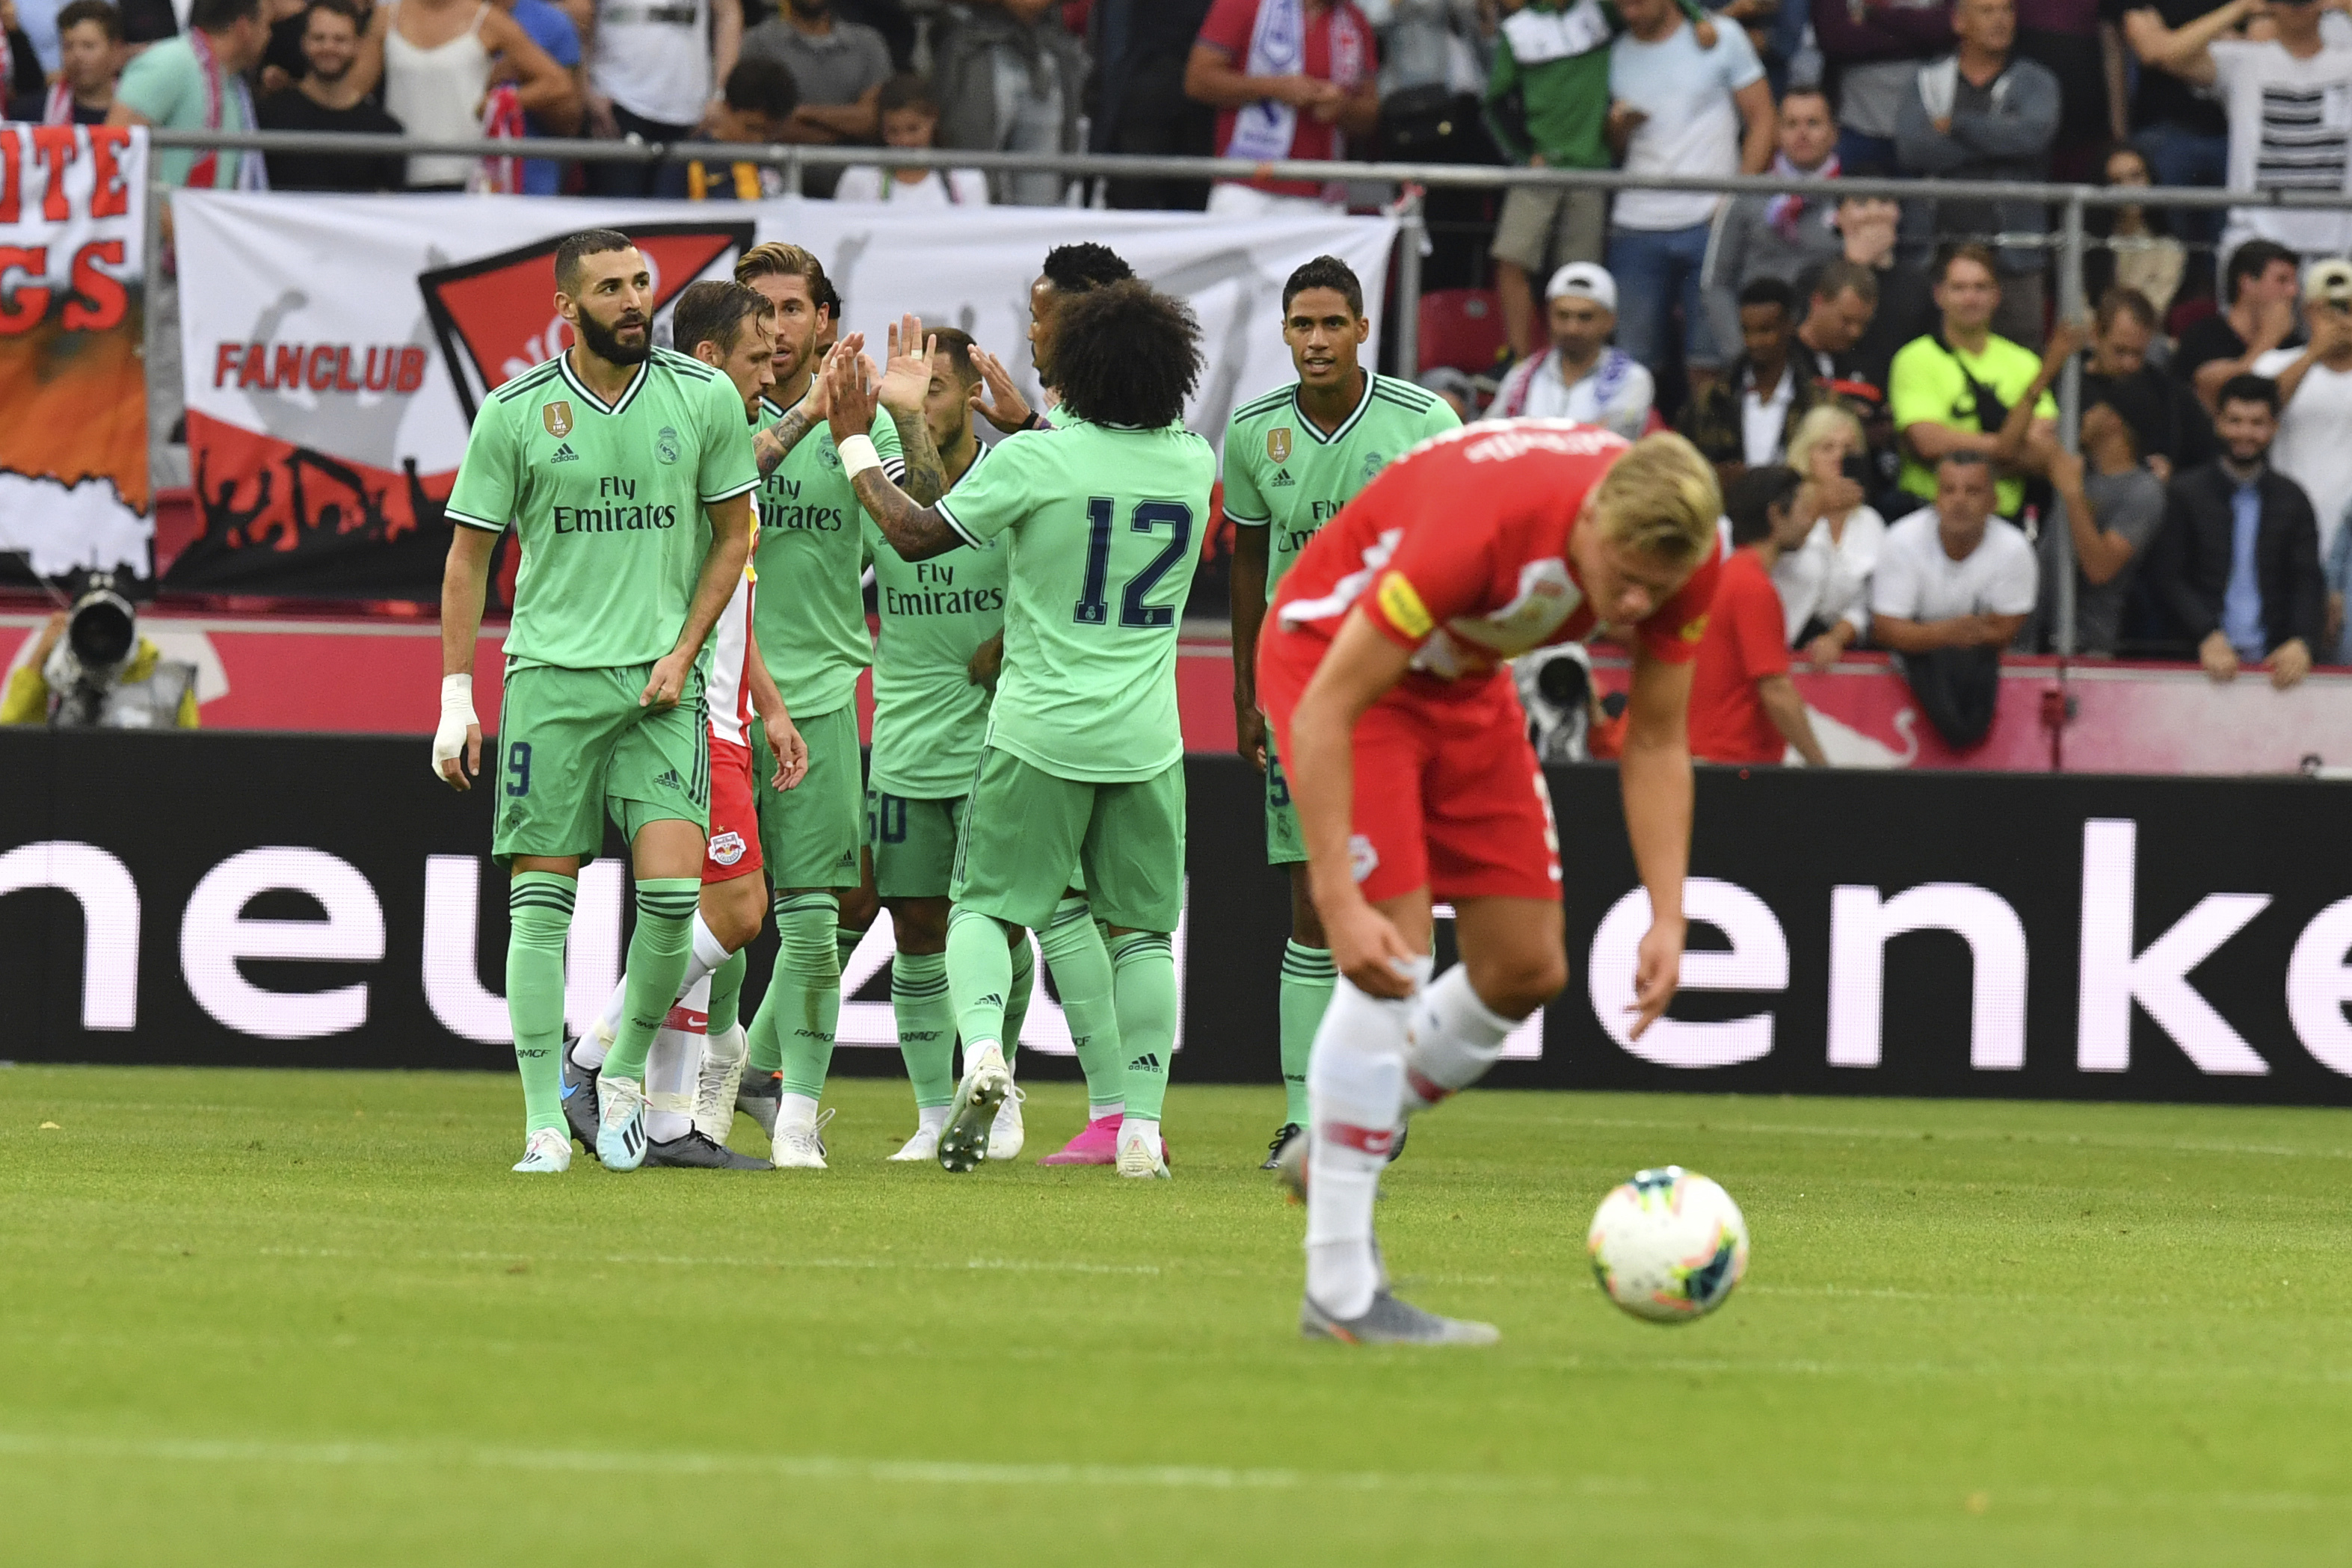 Futbalisti Realu Madrid sa tešia po strelení gólu v prípravnom zápase v Salzburgu 7. augusta 2019. Eden Hazard si otvoril strelecký účet v Reale Madrid.